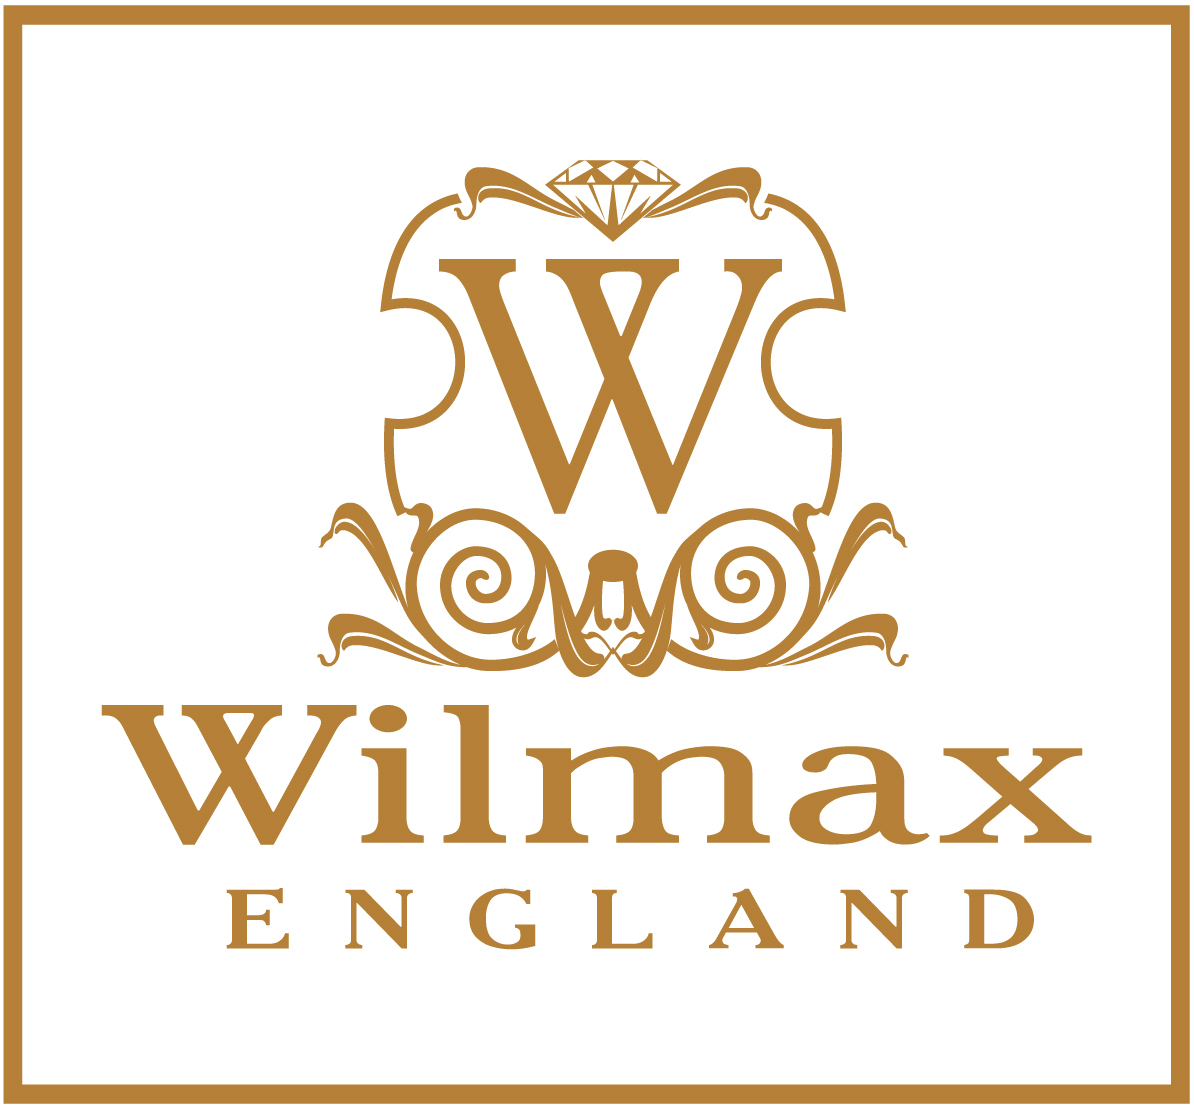 Wilmax England Wine